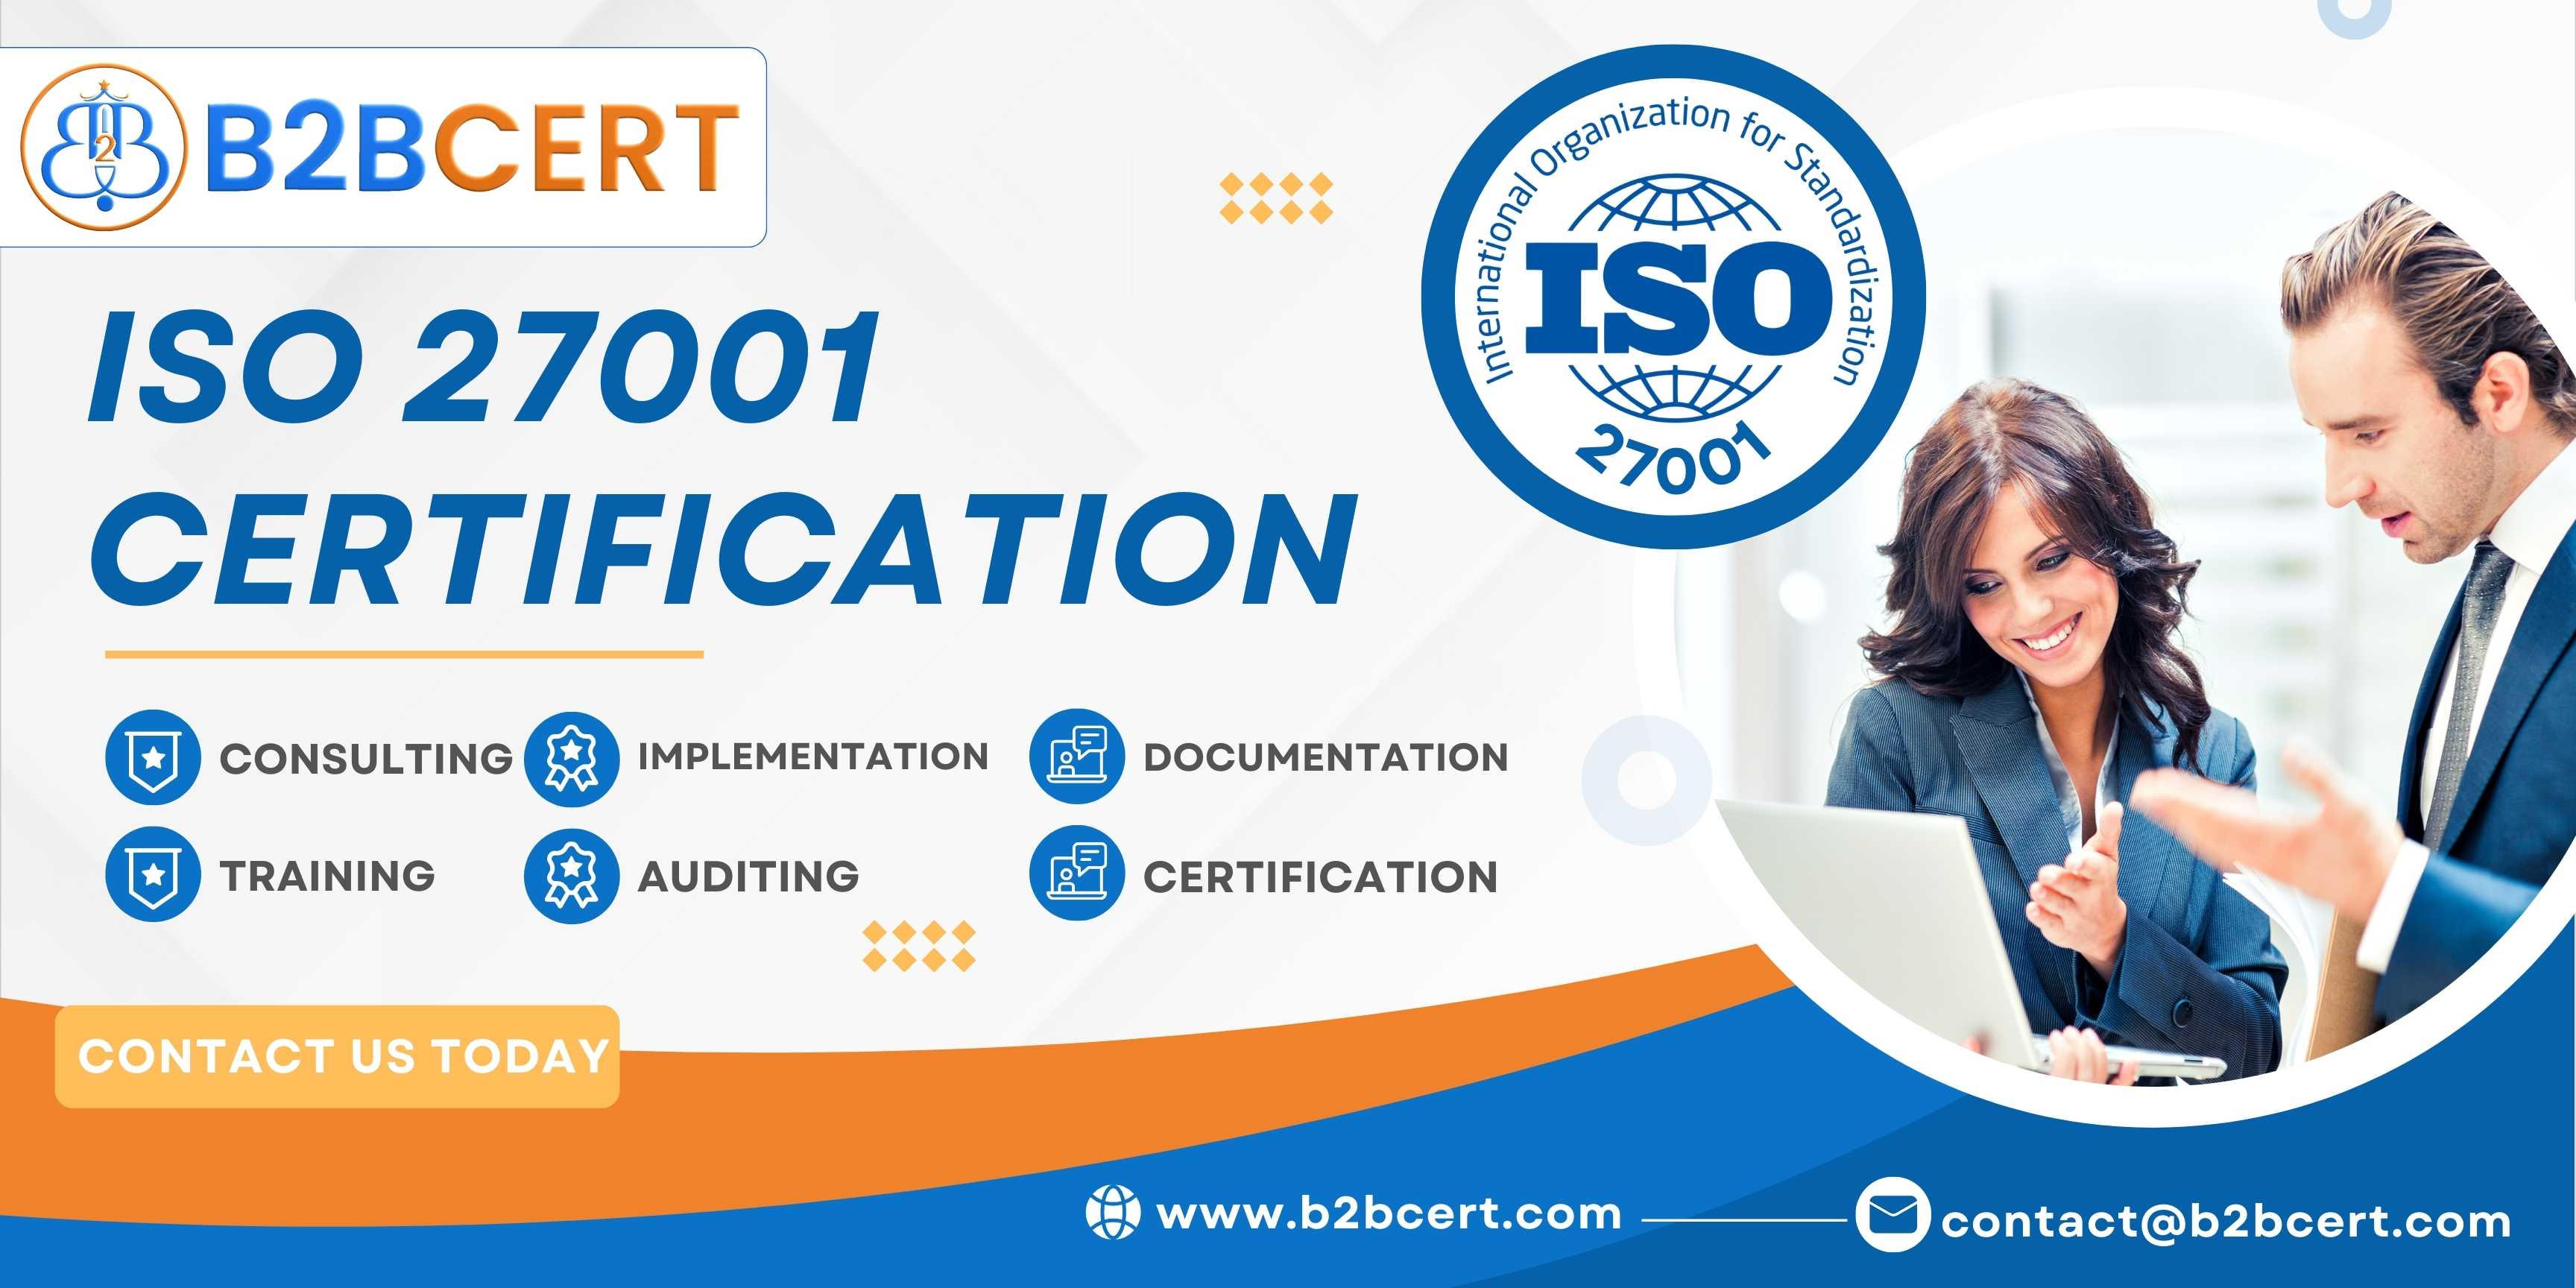 B2Bcert | ISO 27001 certification